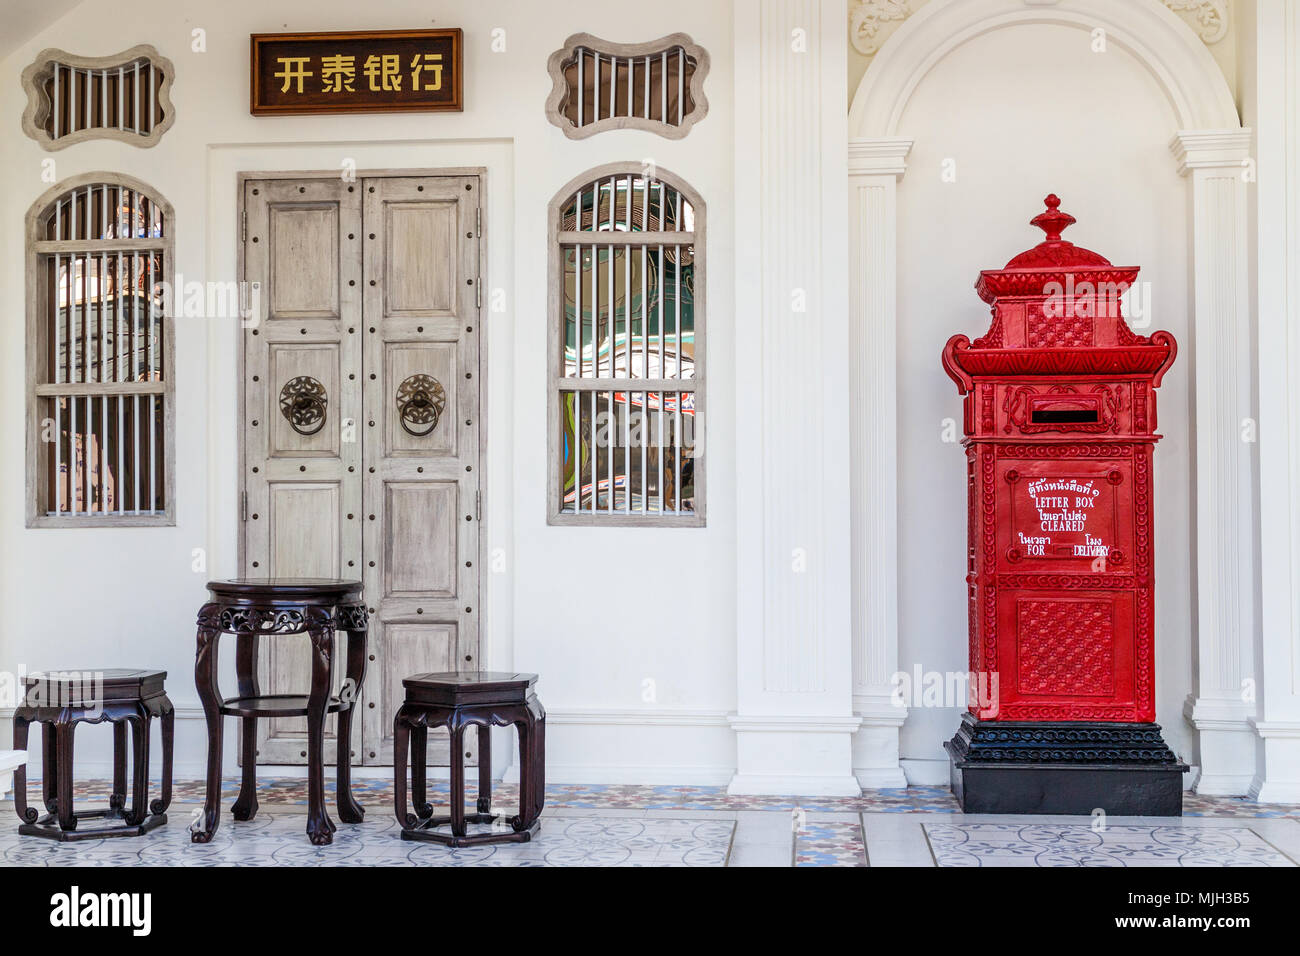 Postbox e stile cinese mobili, sino portoghese architettura coloniale, la vecchia città di Phuket, Tailandia Foto Stock